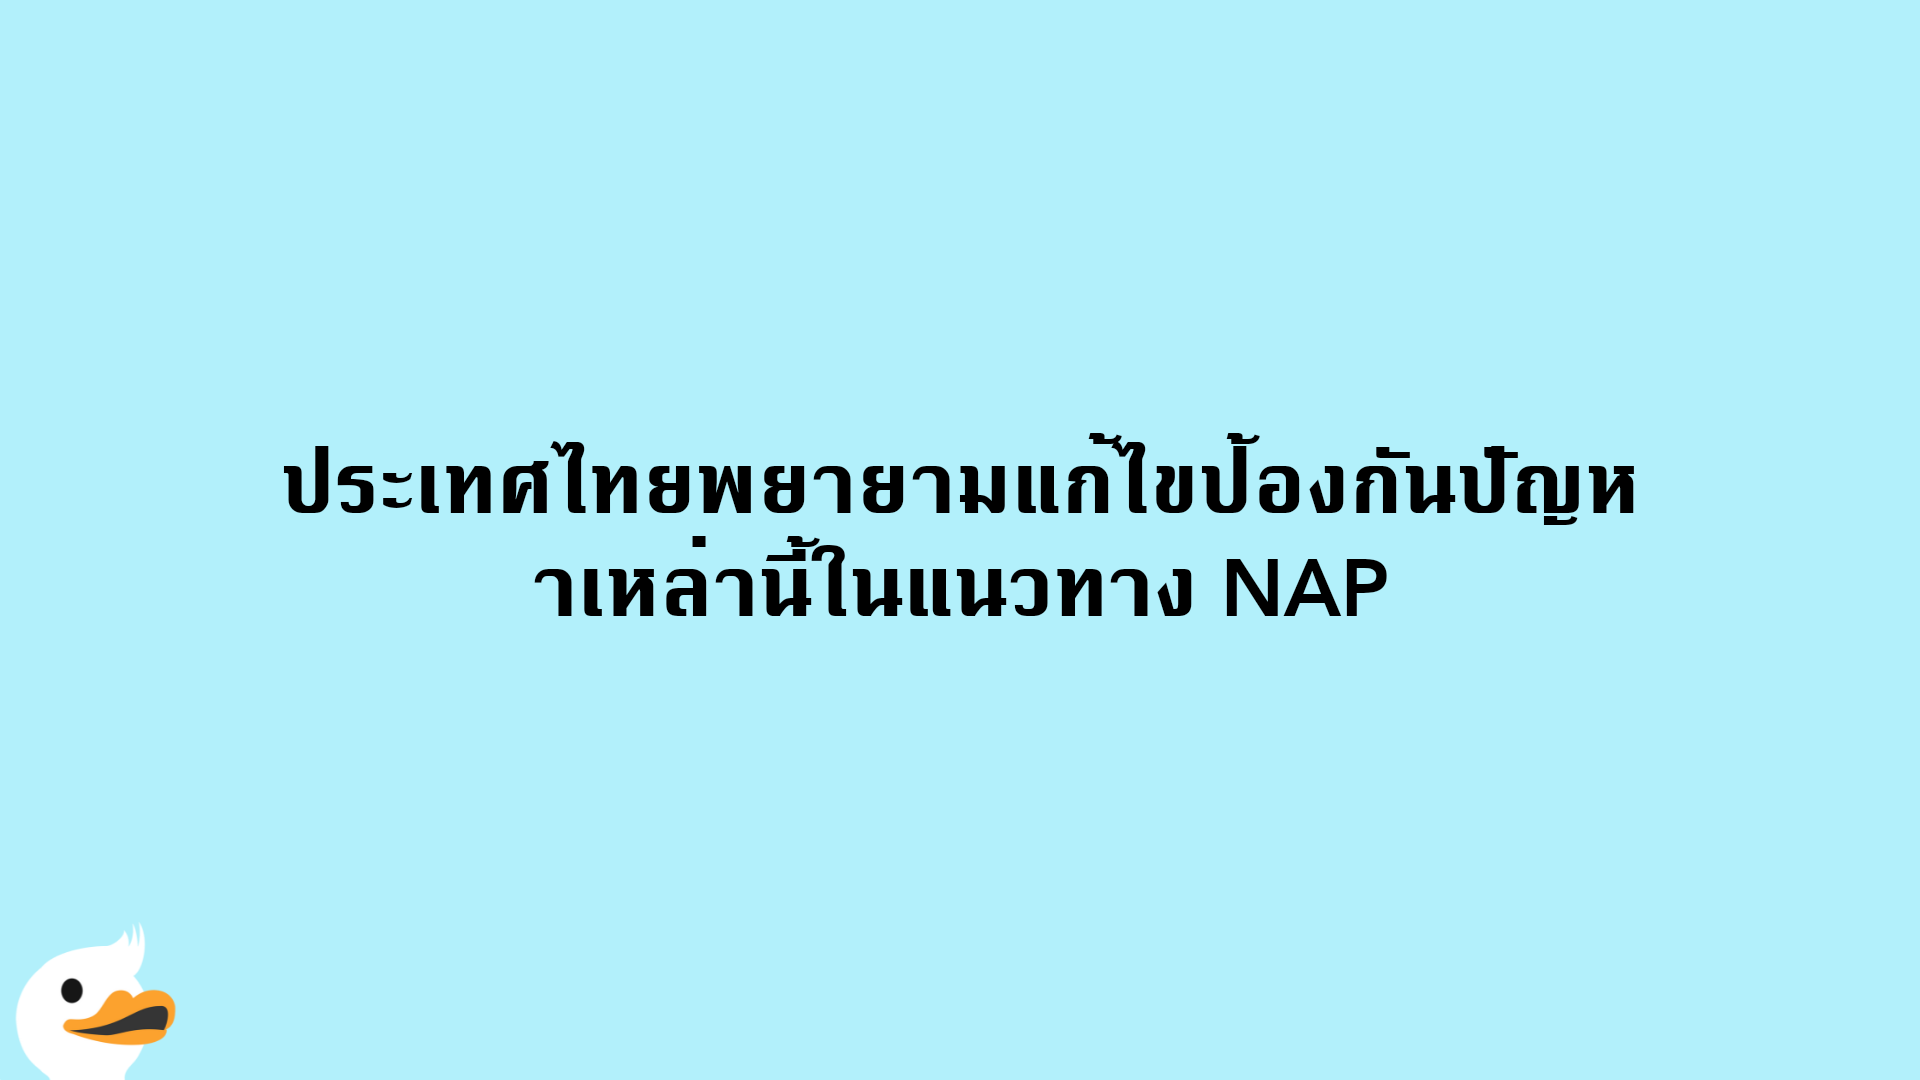 ประเทศไทยพยายามแก้ไขป้องกันปัญหาเหล่านี้ในแนวทาง NAP